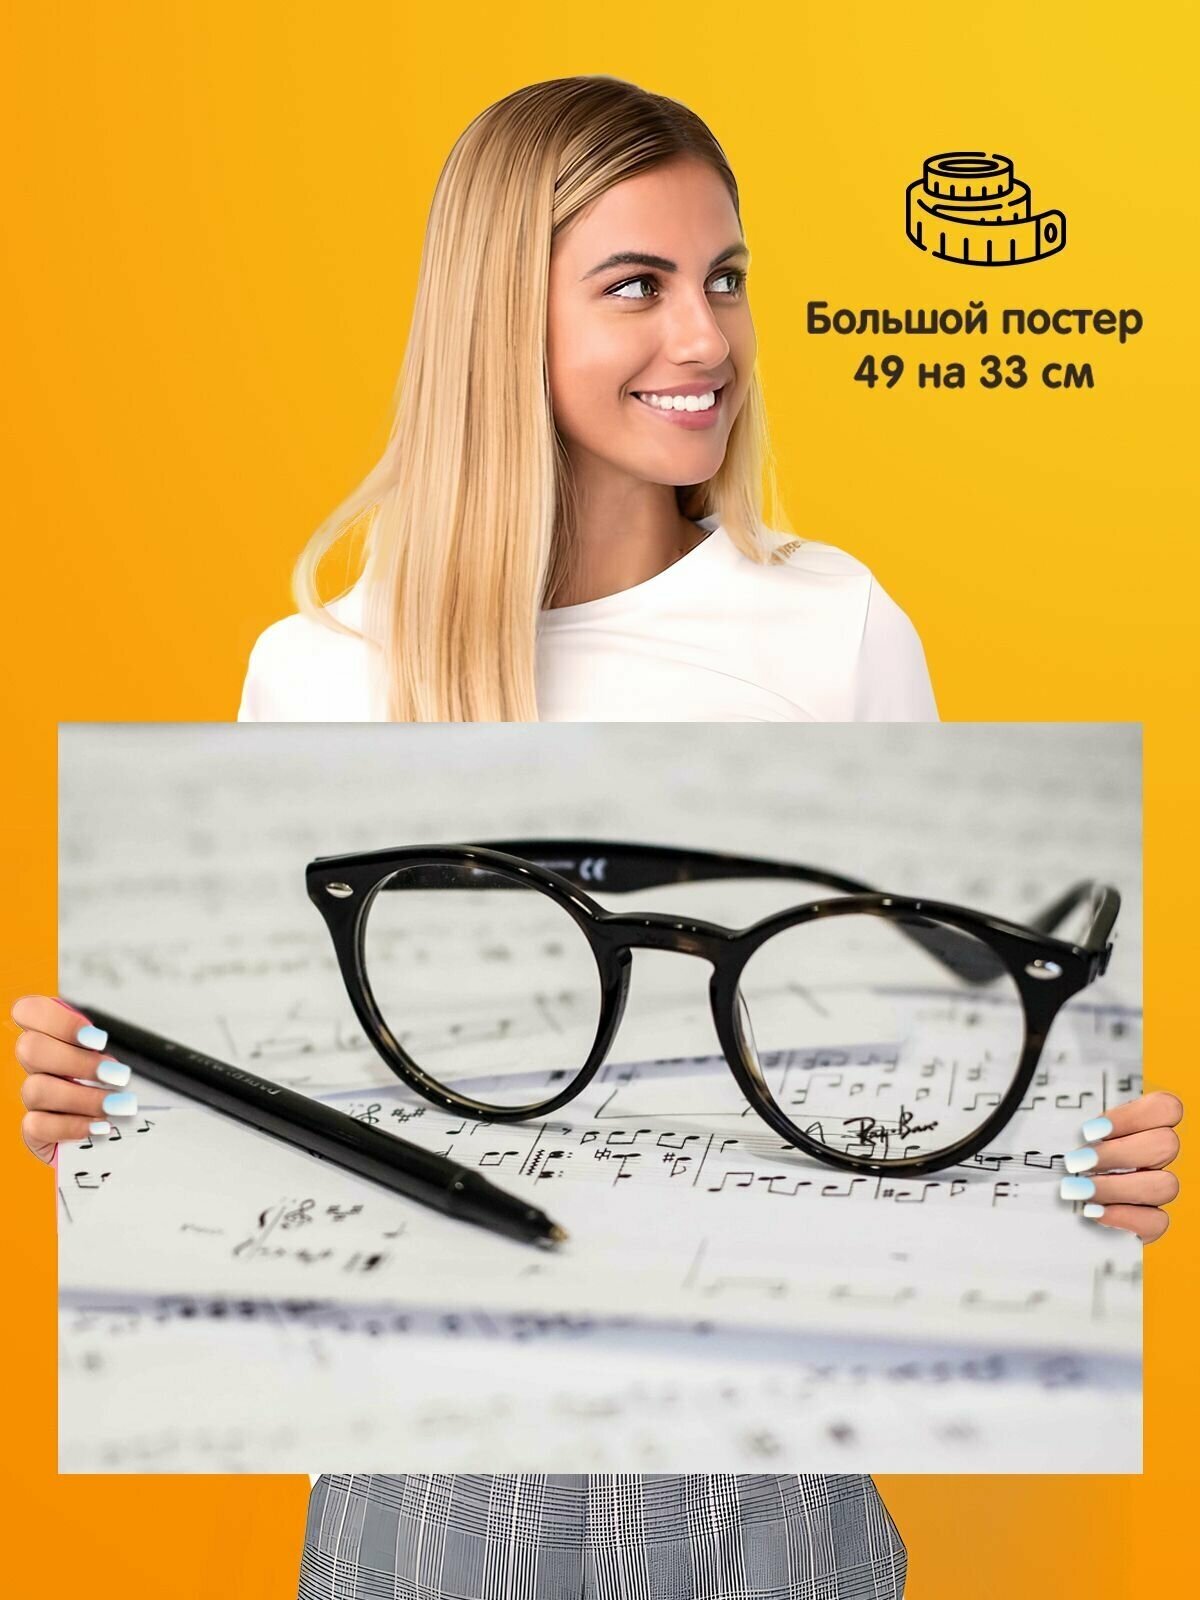 Постер Оптика очки